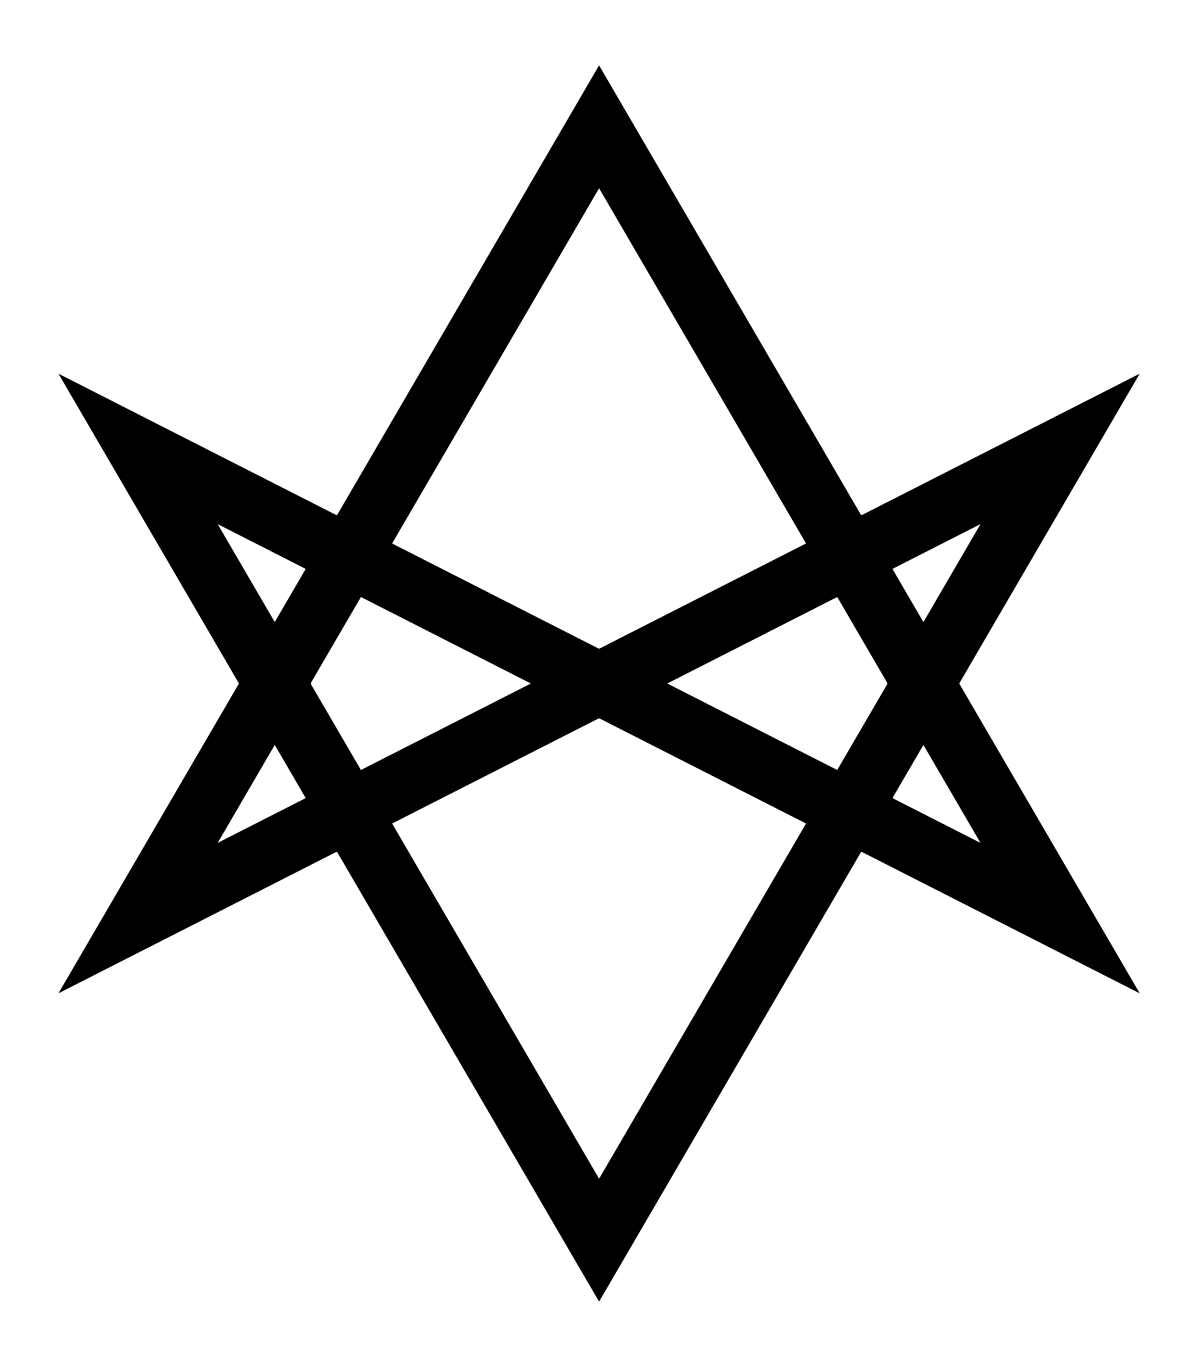 Red 3 Pointed Star Logo - Unicursal hexagram